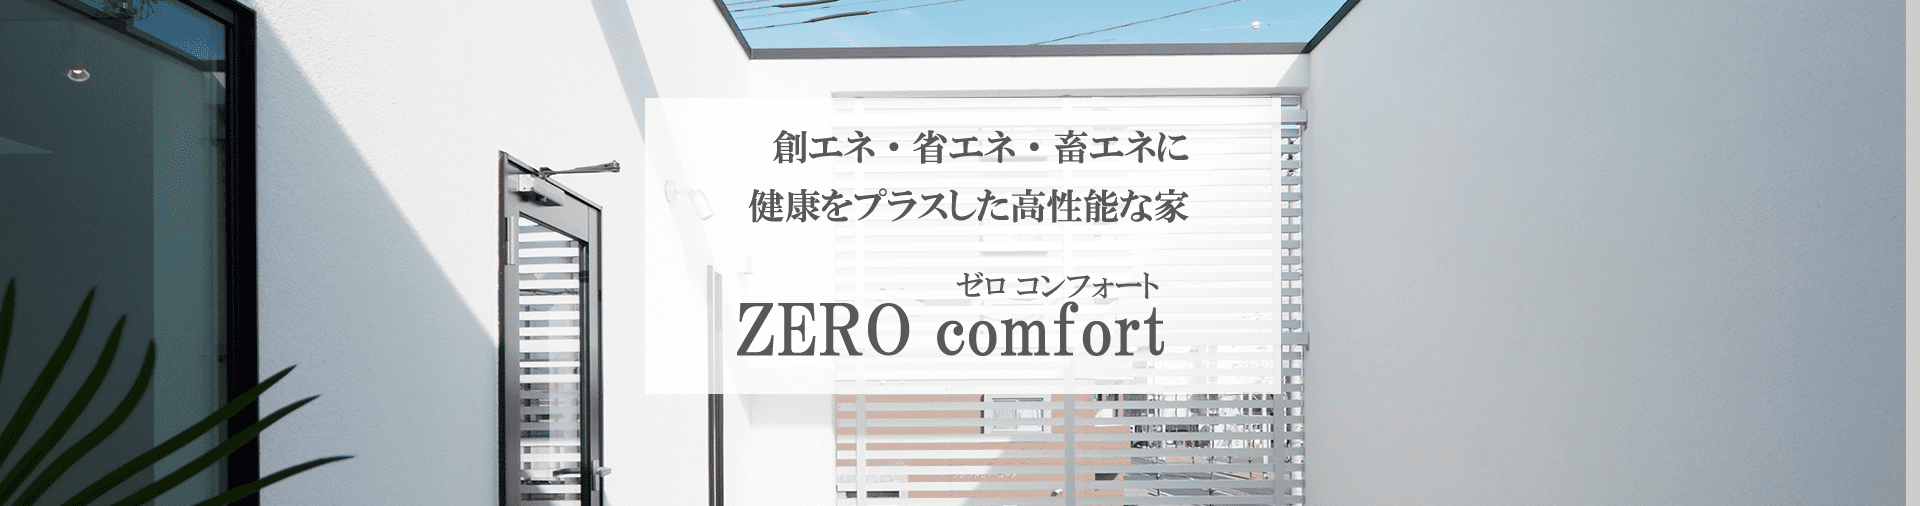 商品ラインナップ【ZERO comfort】-大阪・堺の工務店ラックハウジング